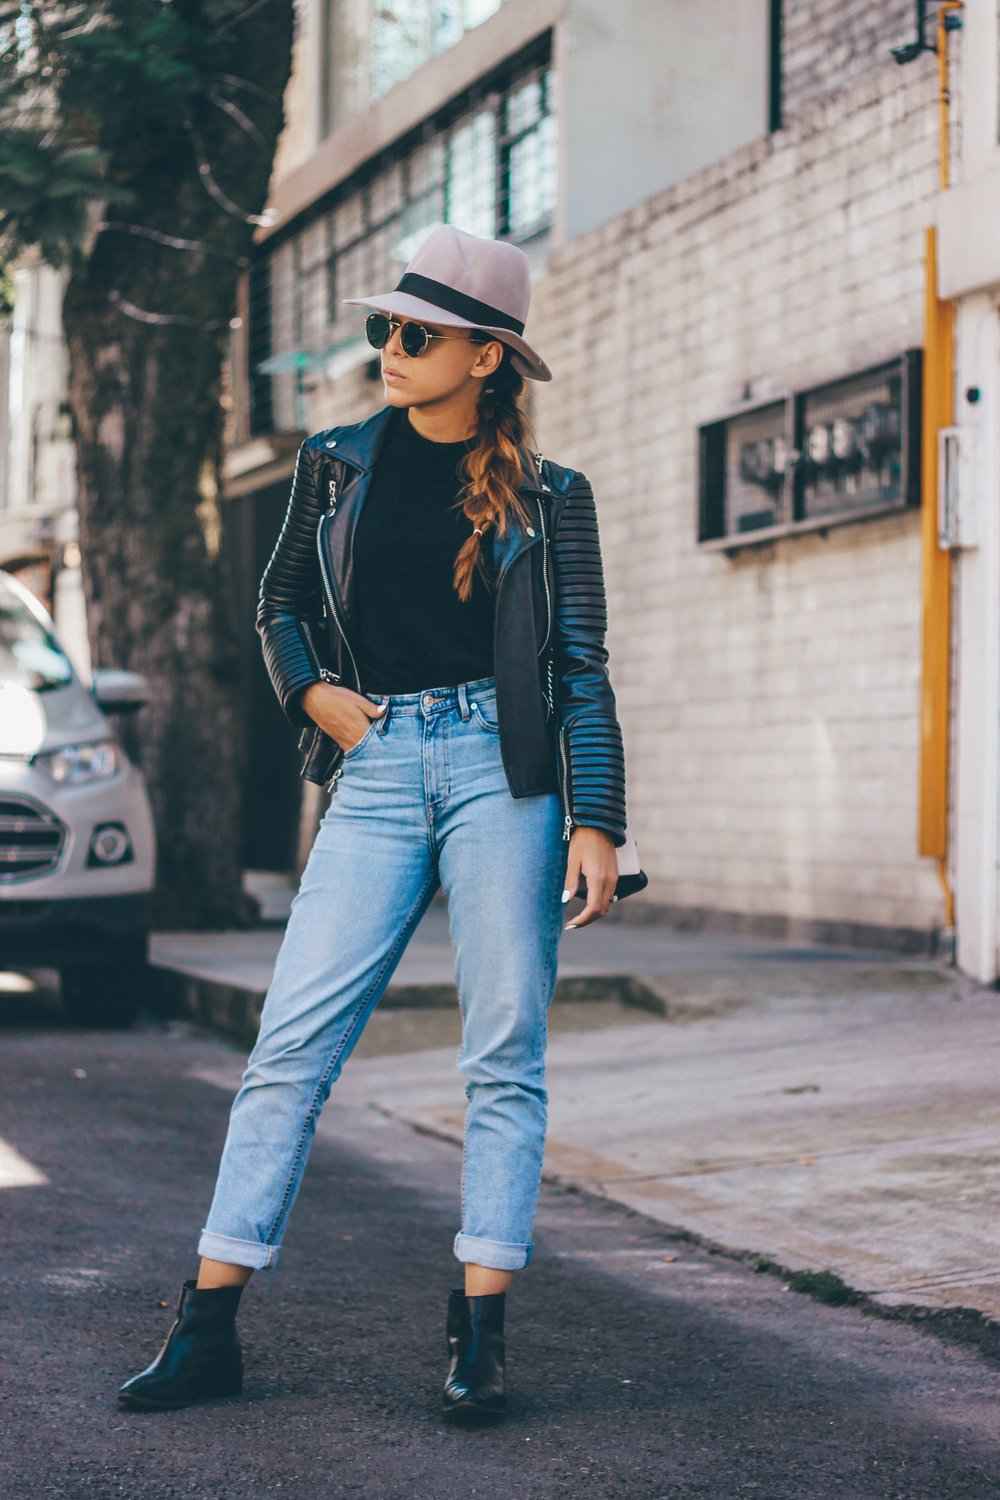 Os jeans da mamãe combinam jaqueta de couro botins femininos chapéus tendências da moda 2019 mulheres